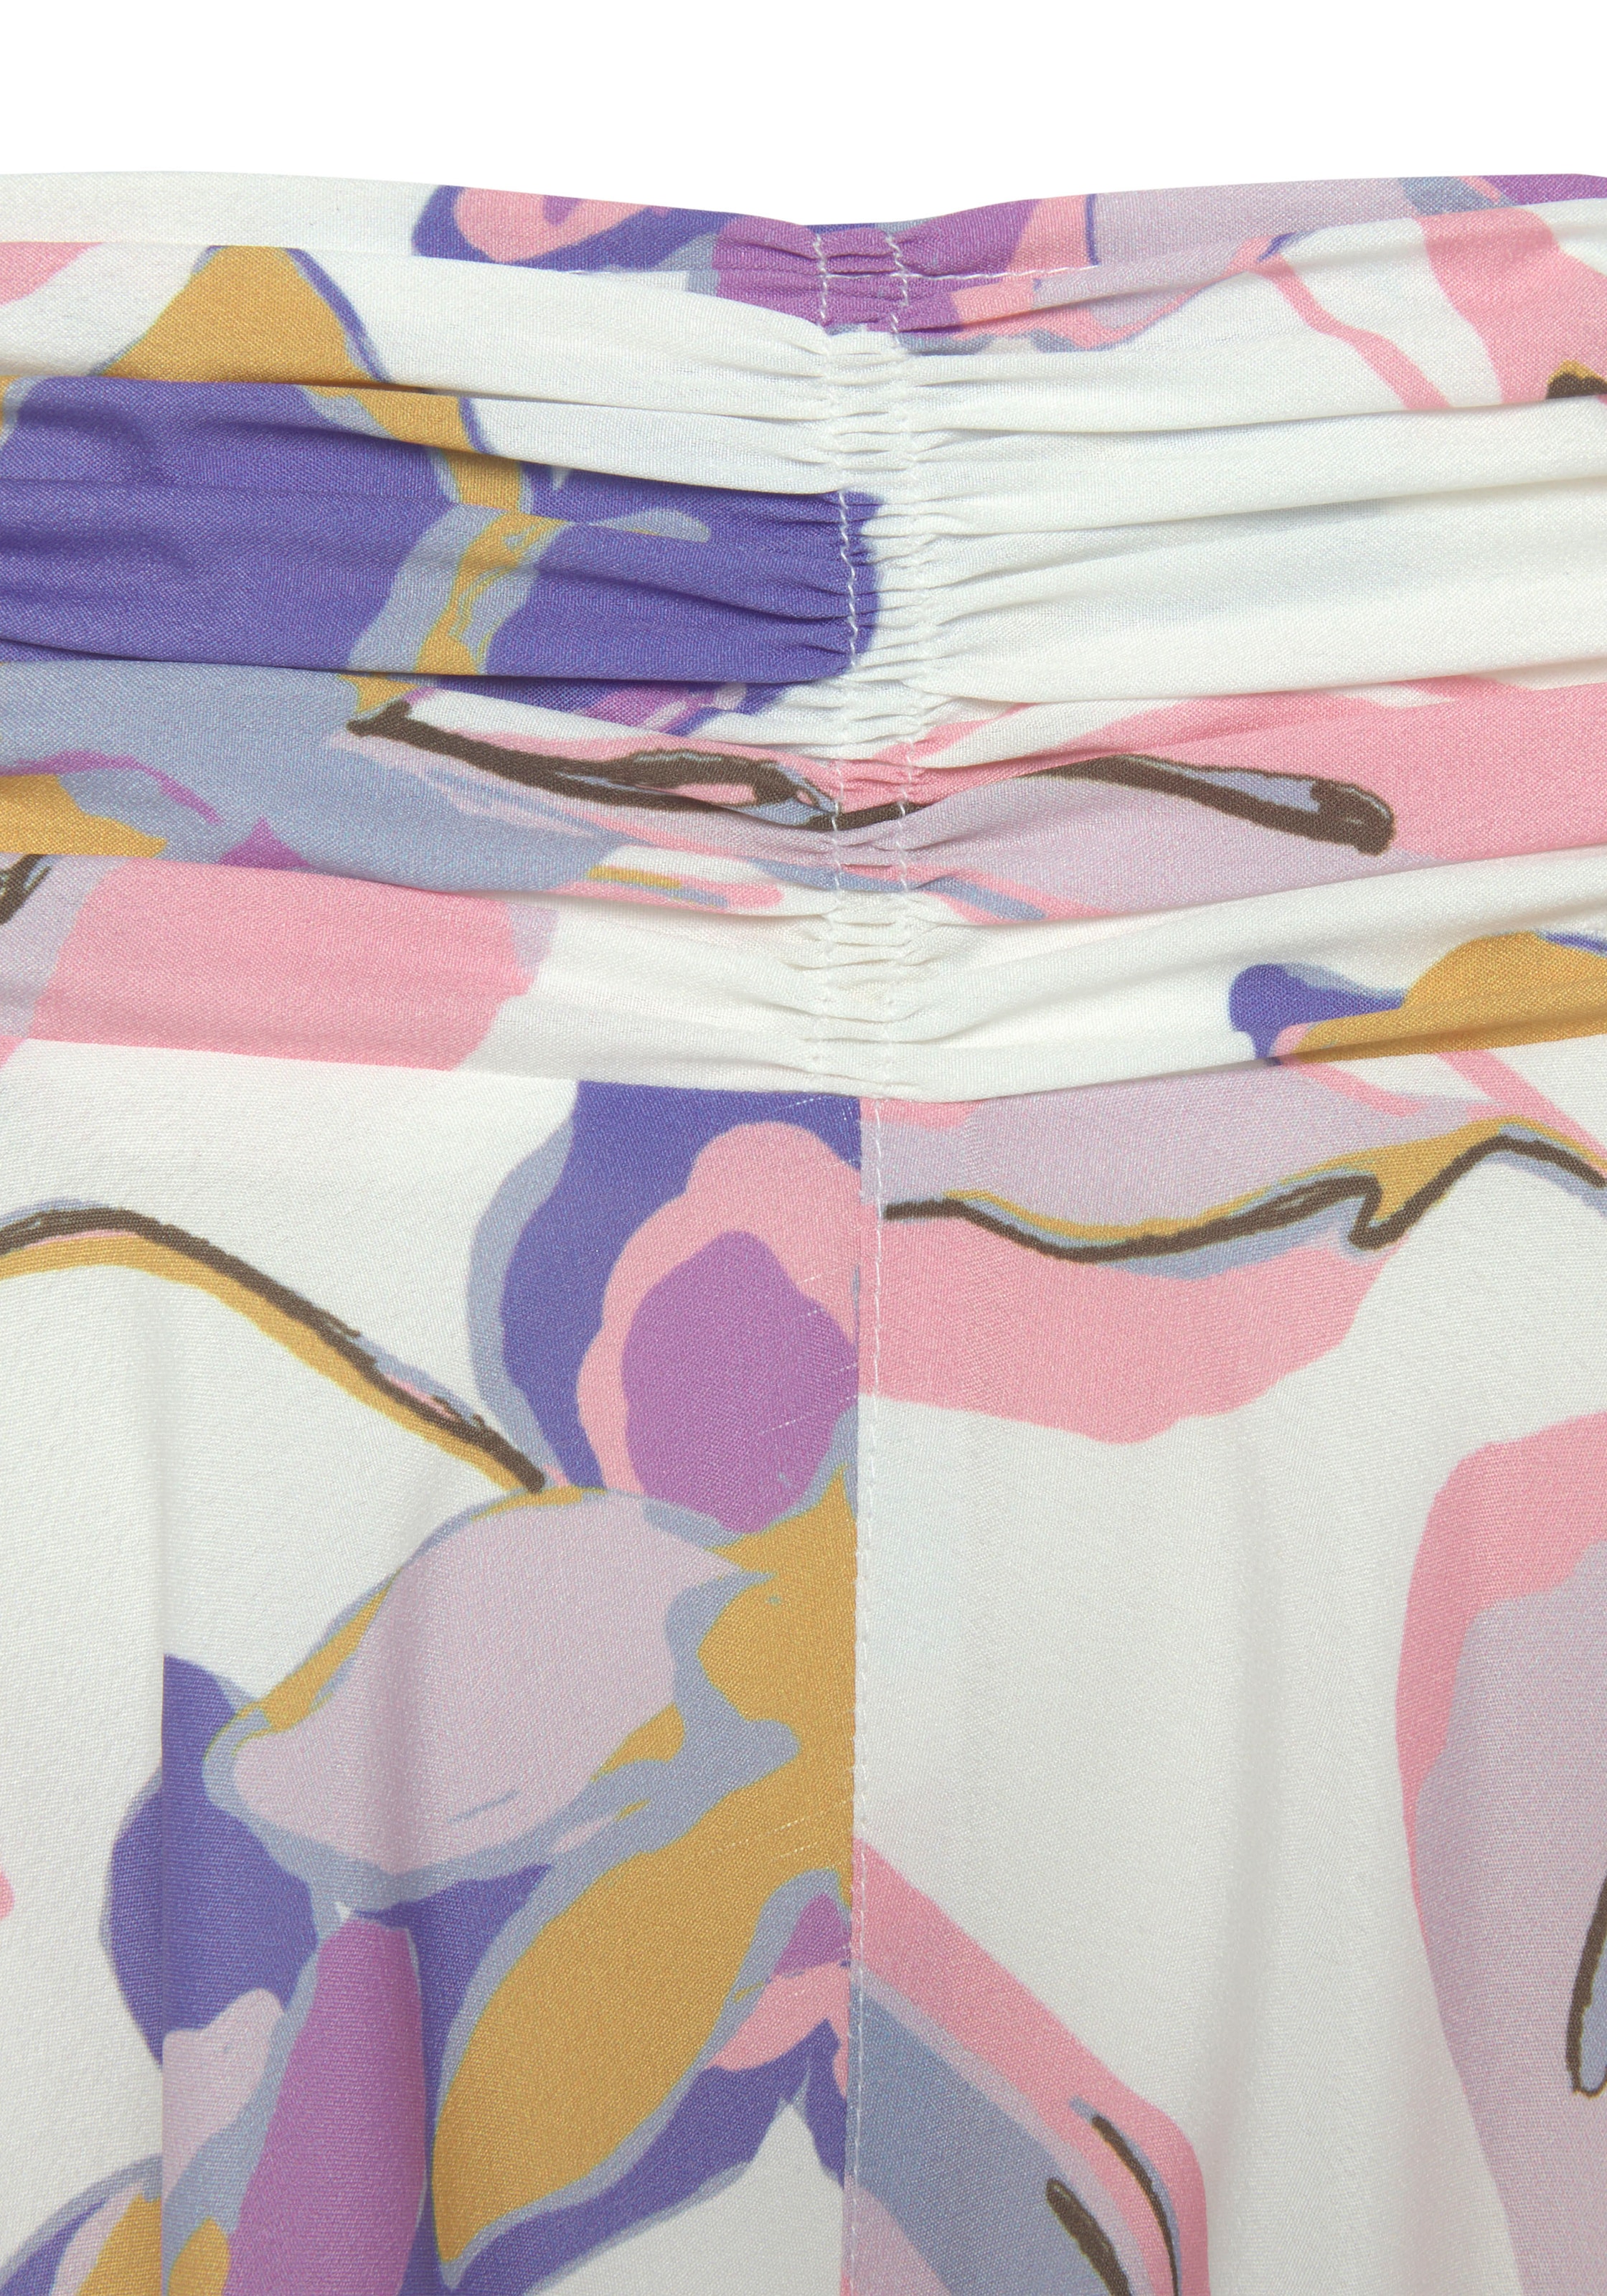 LASCANA Strandhose, mit floralem Alloverdruck und Taschen, elastisch,  lockere Passform bei OTTOversand